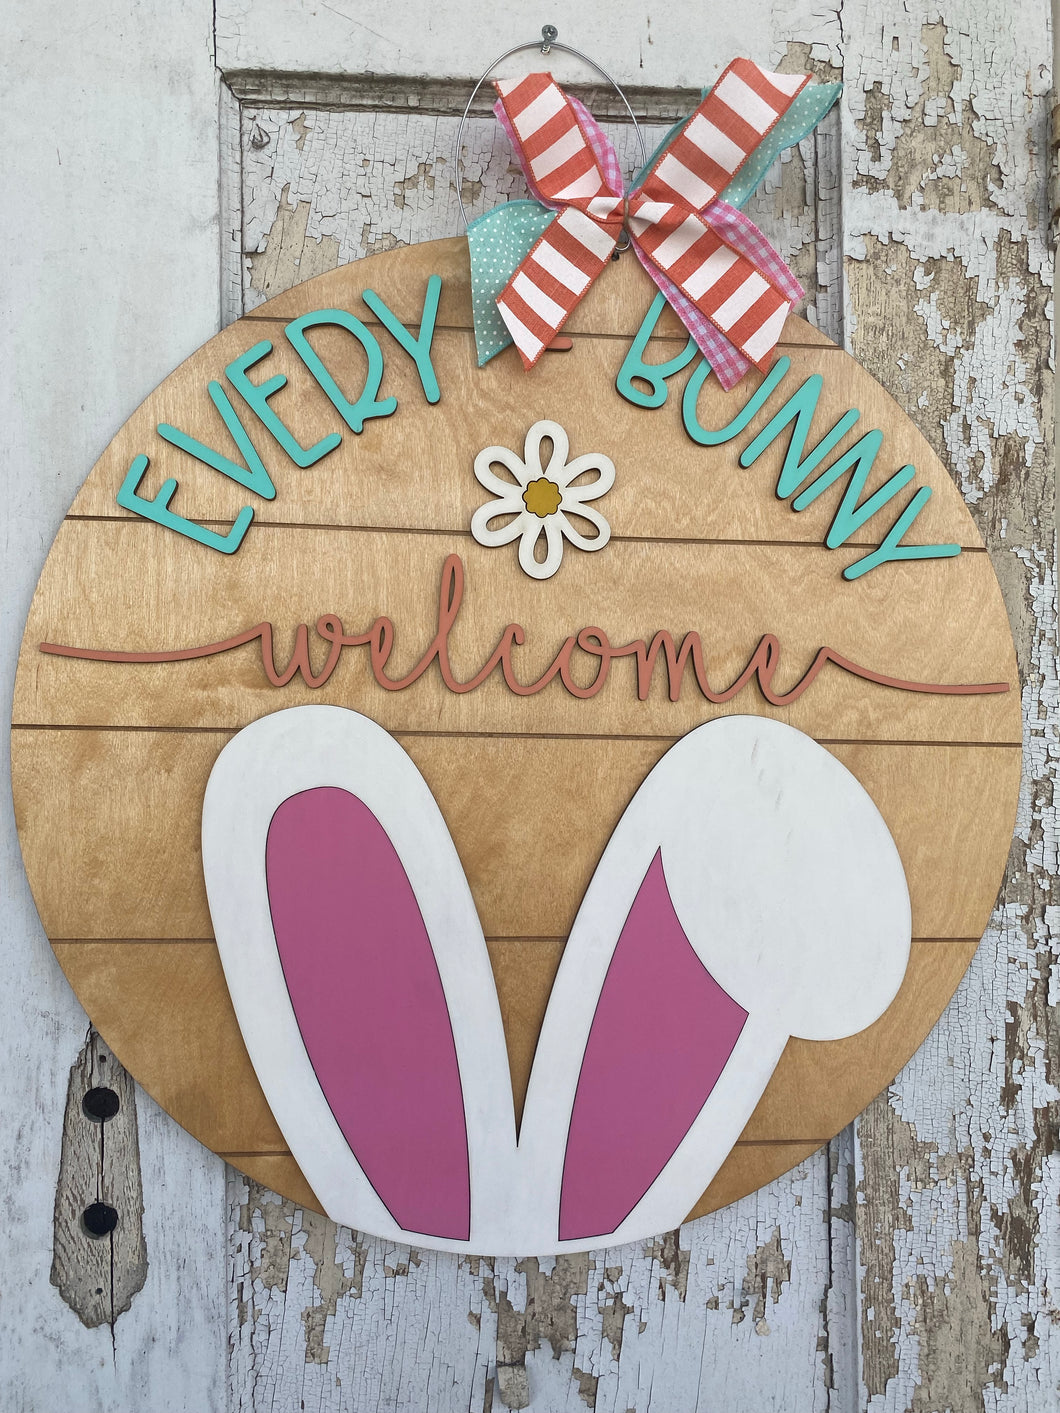 Every Bunny Welcome Door Hanger